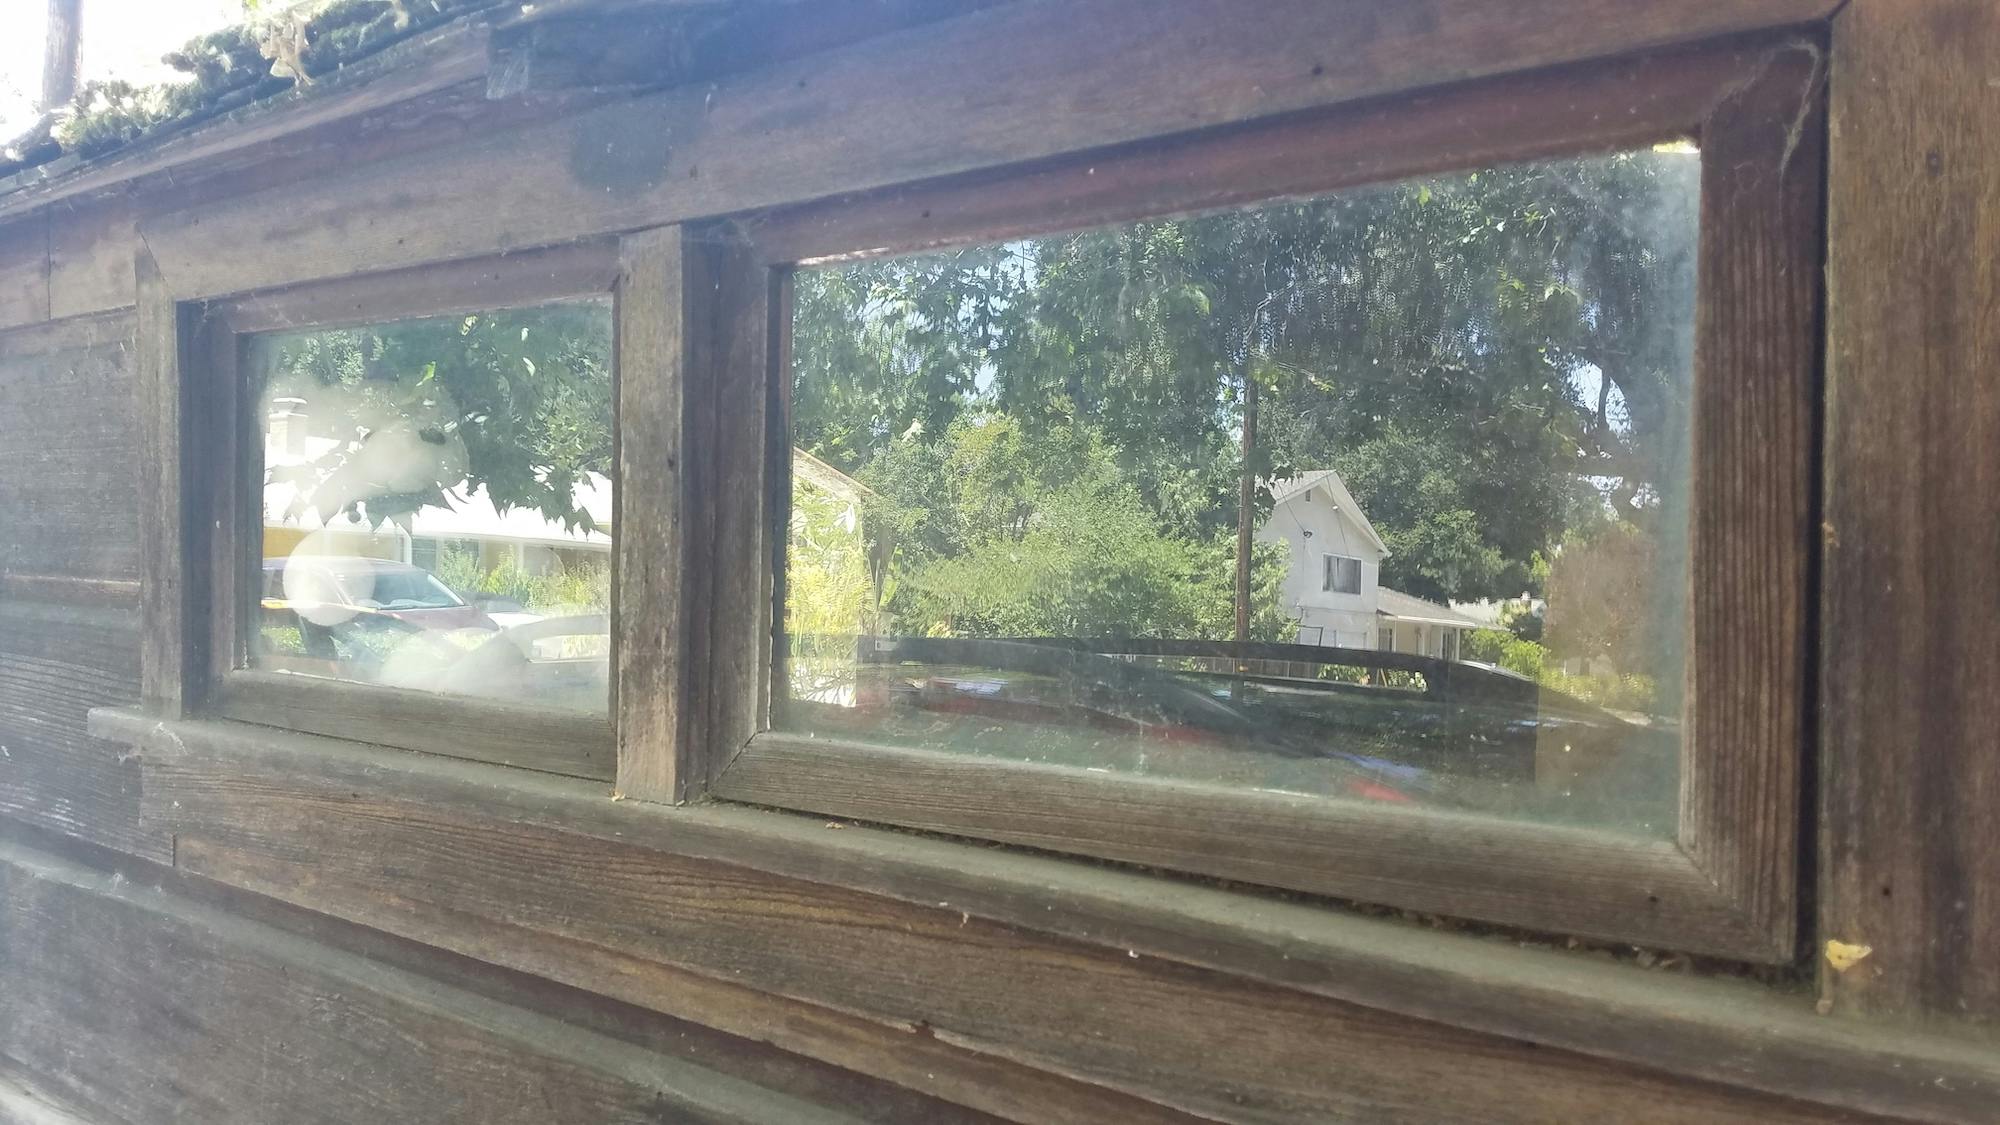 Trundlehouse GMC Camper windows